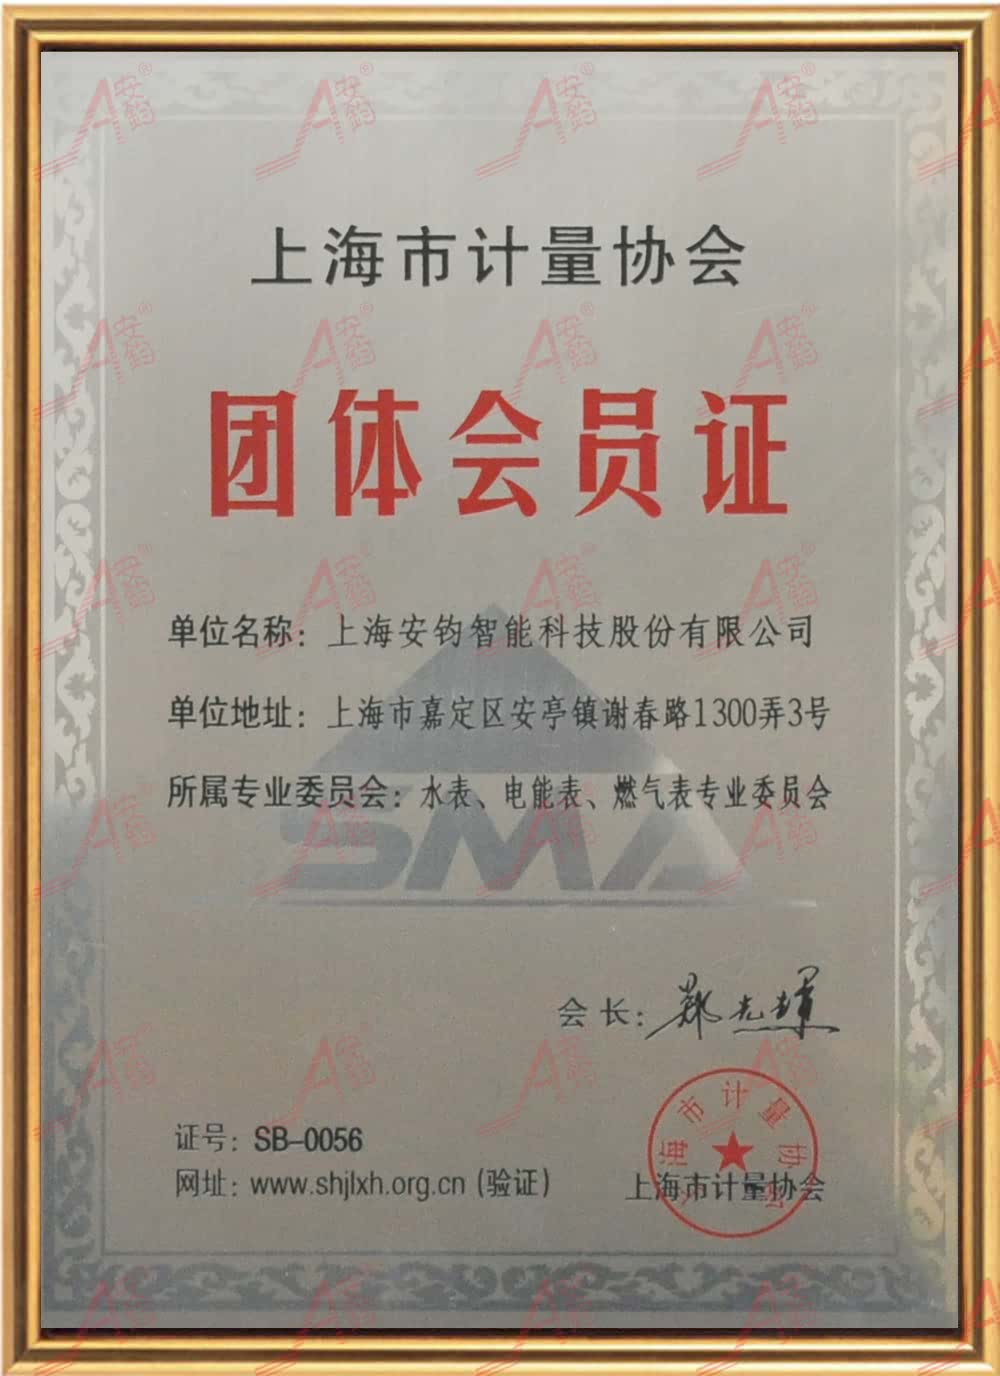 上海市计量协会团体会员证 (2).jpg